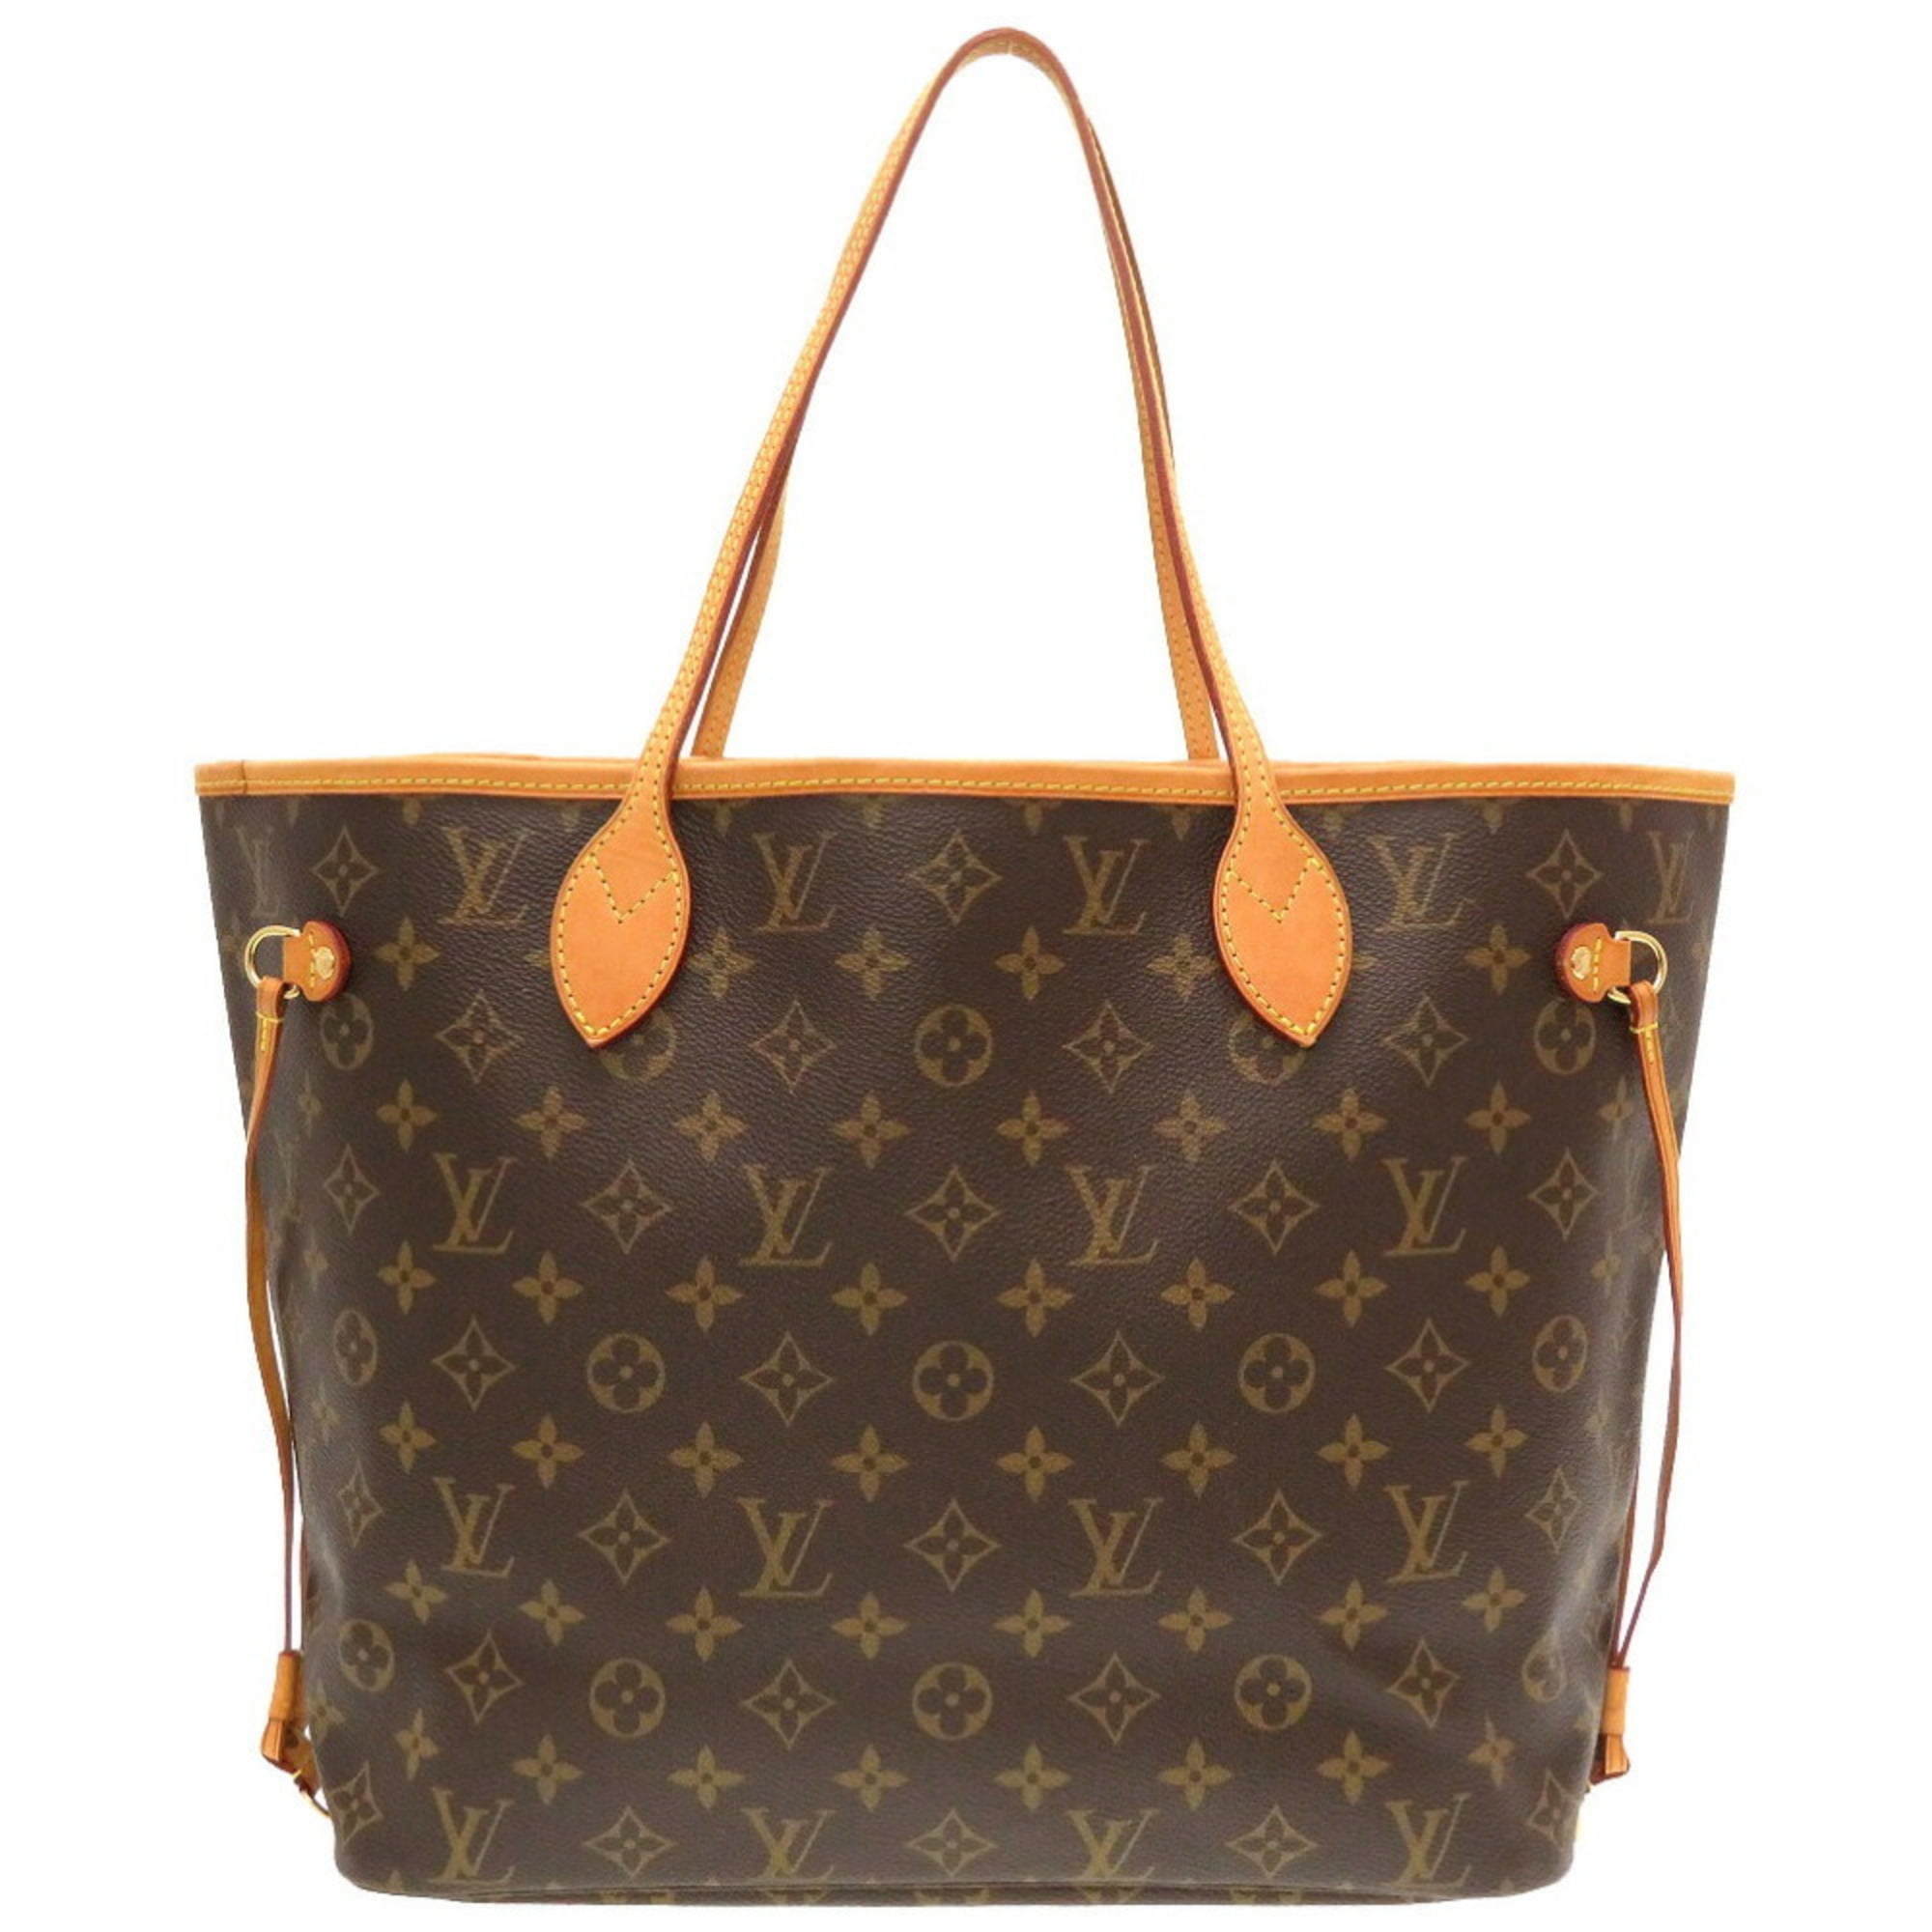 Louis Vuitton vintage bags  Our luxury Louis Vuitton secondhand  secondhand  bags  Vintega